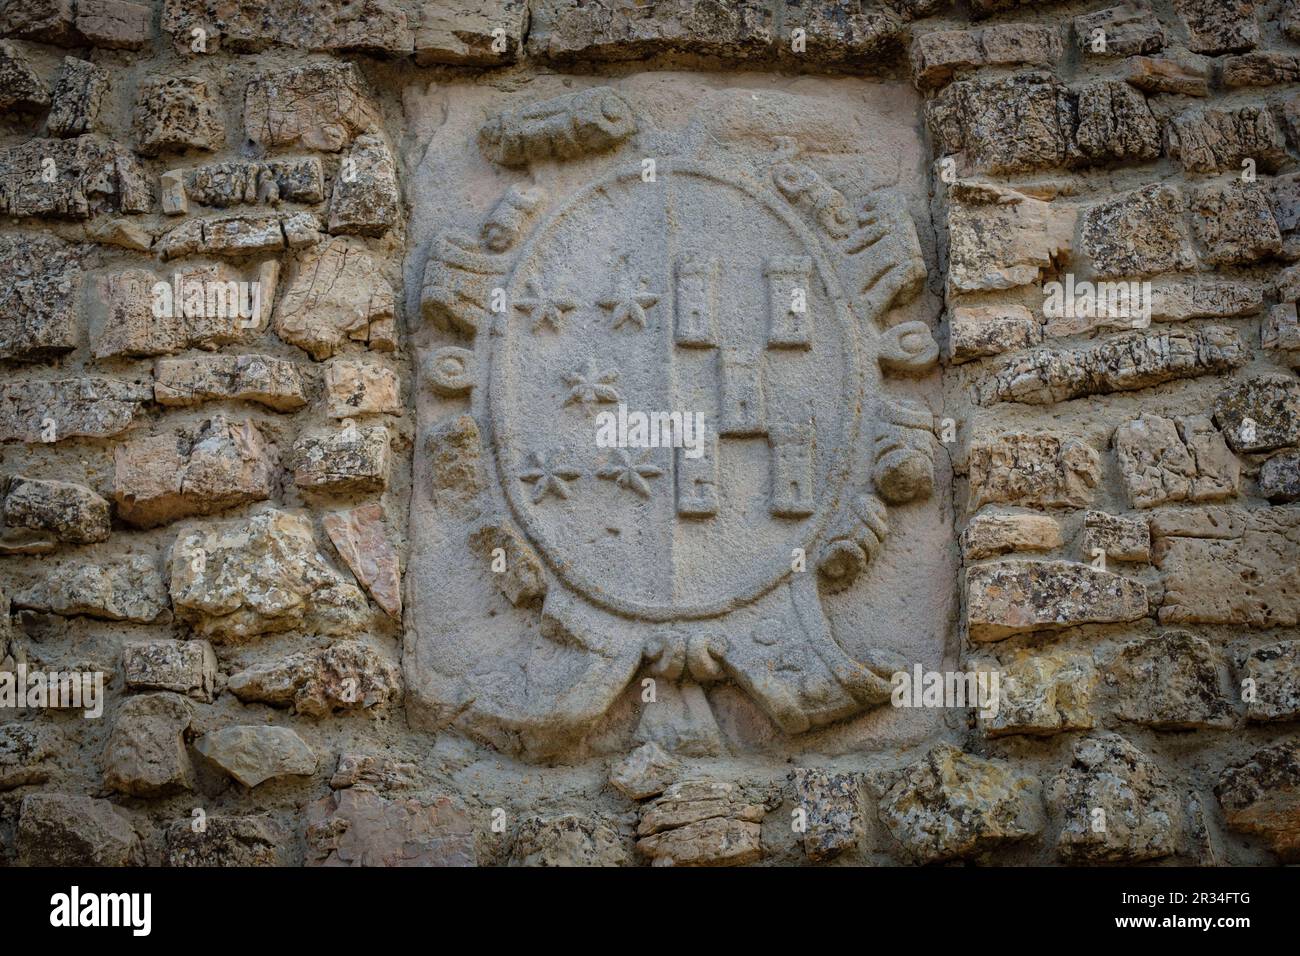 escudo nobiliario en una fachada de la calle barranco, Medinaceli, Soria, comunidad autónoma de Castilla y León, Spain, Europe. Stock Photo